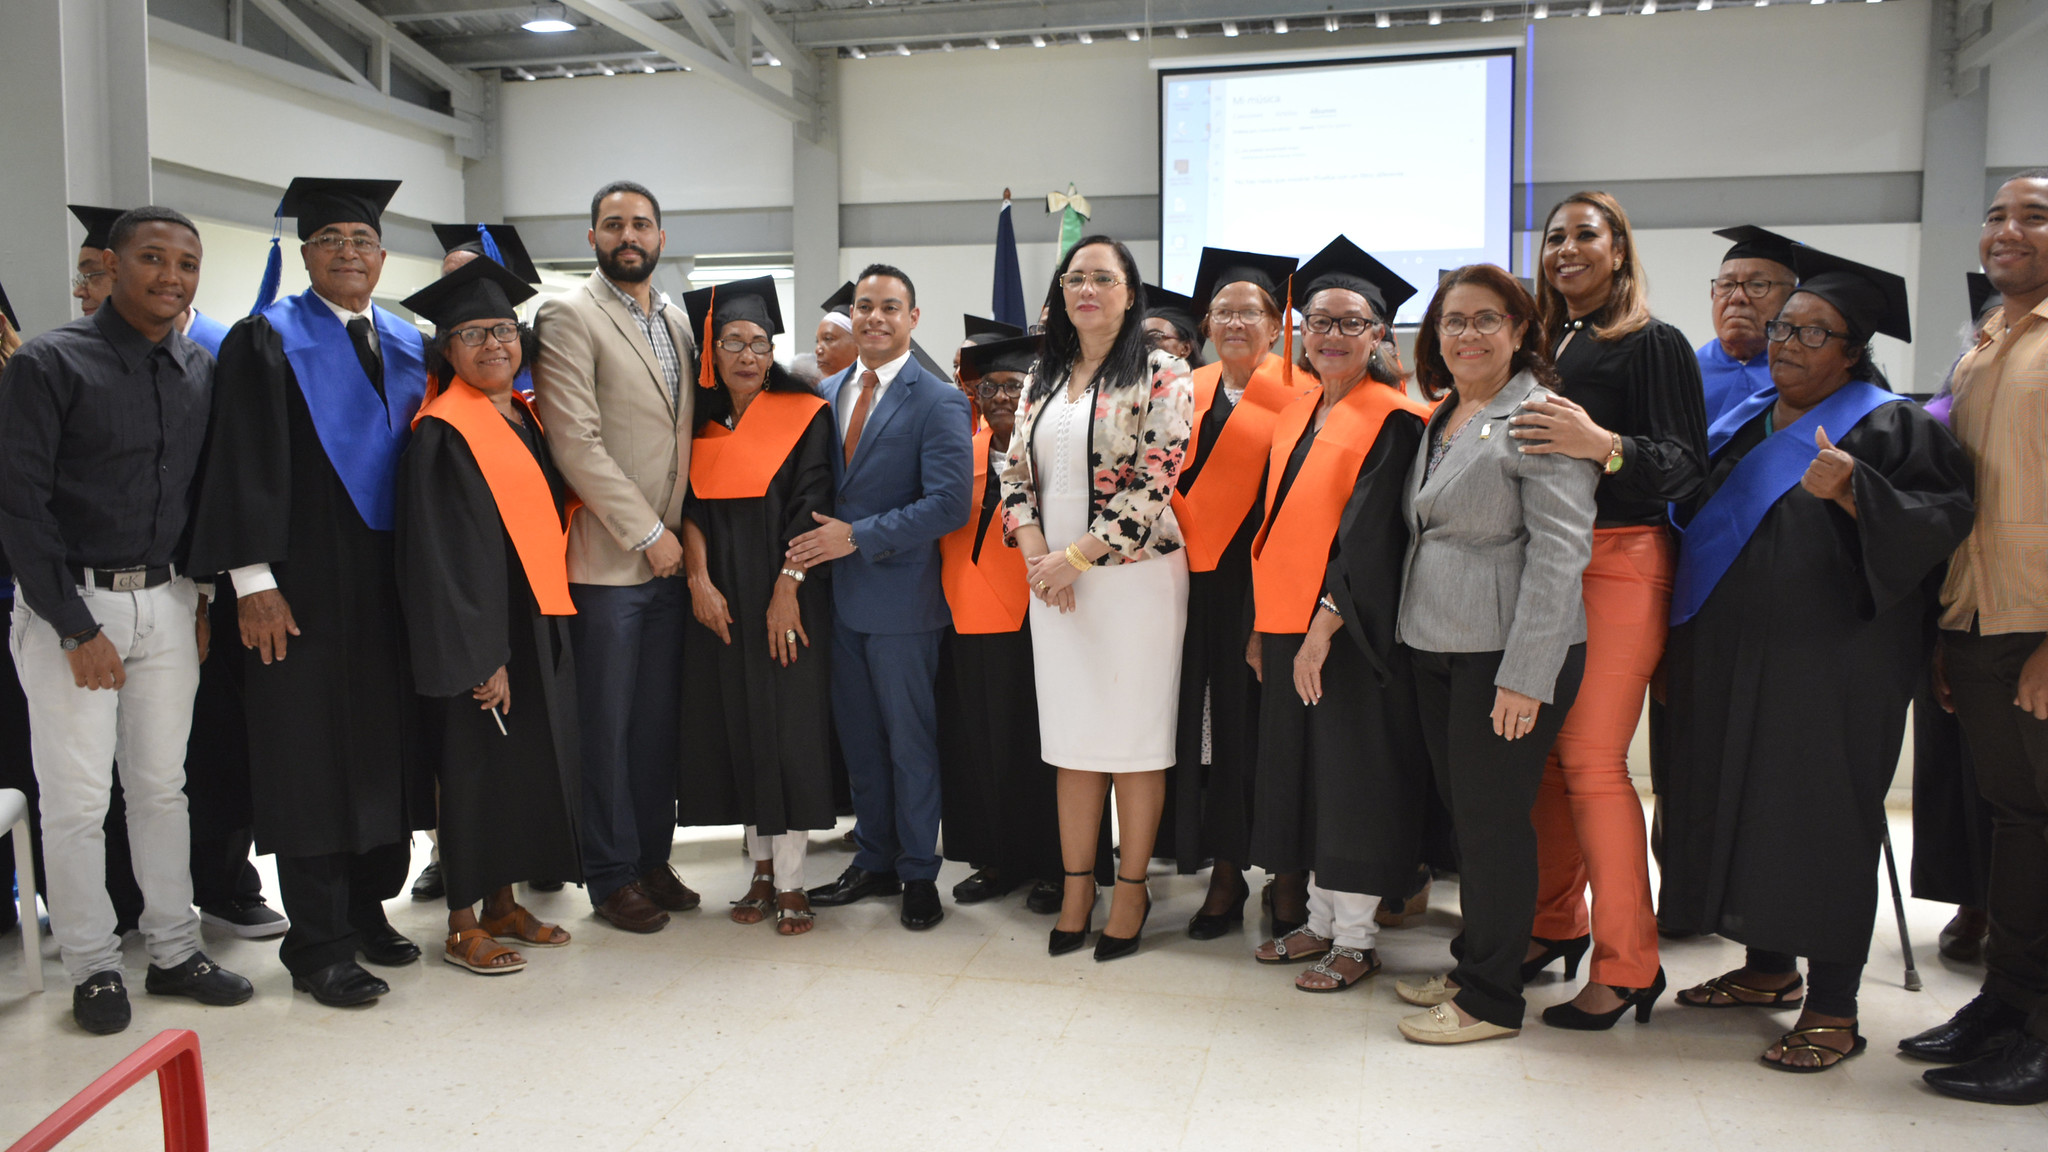 REPÚBLICA DOMINICANA: Centro de Atención Integral para Adultos Mayores Ciudad Juan Bosch celebra primer aniversario con graduación